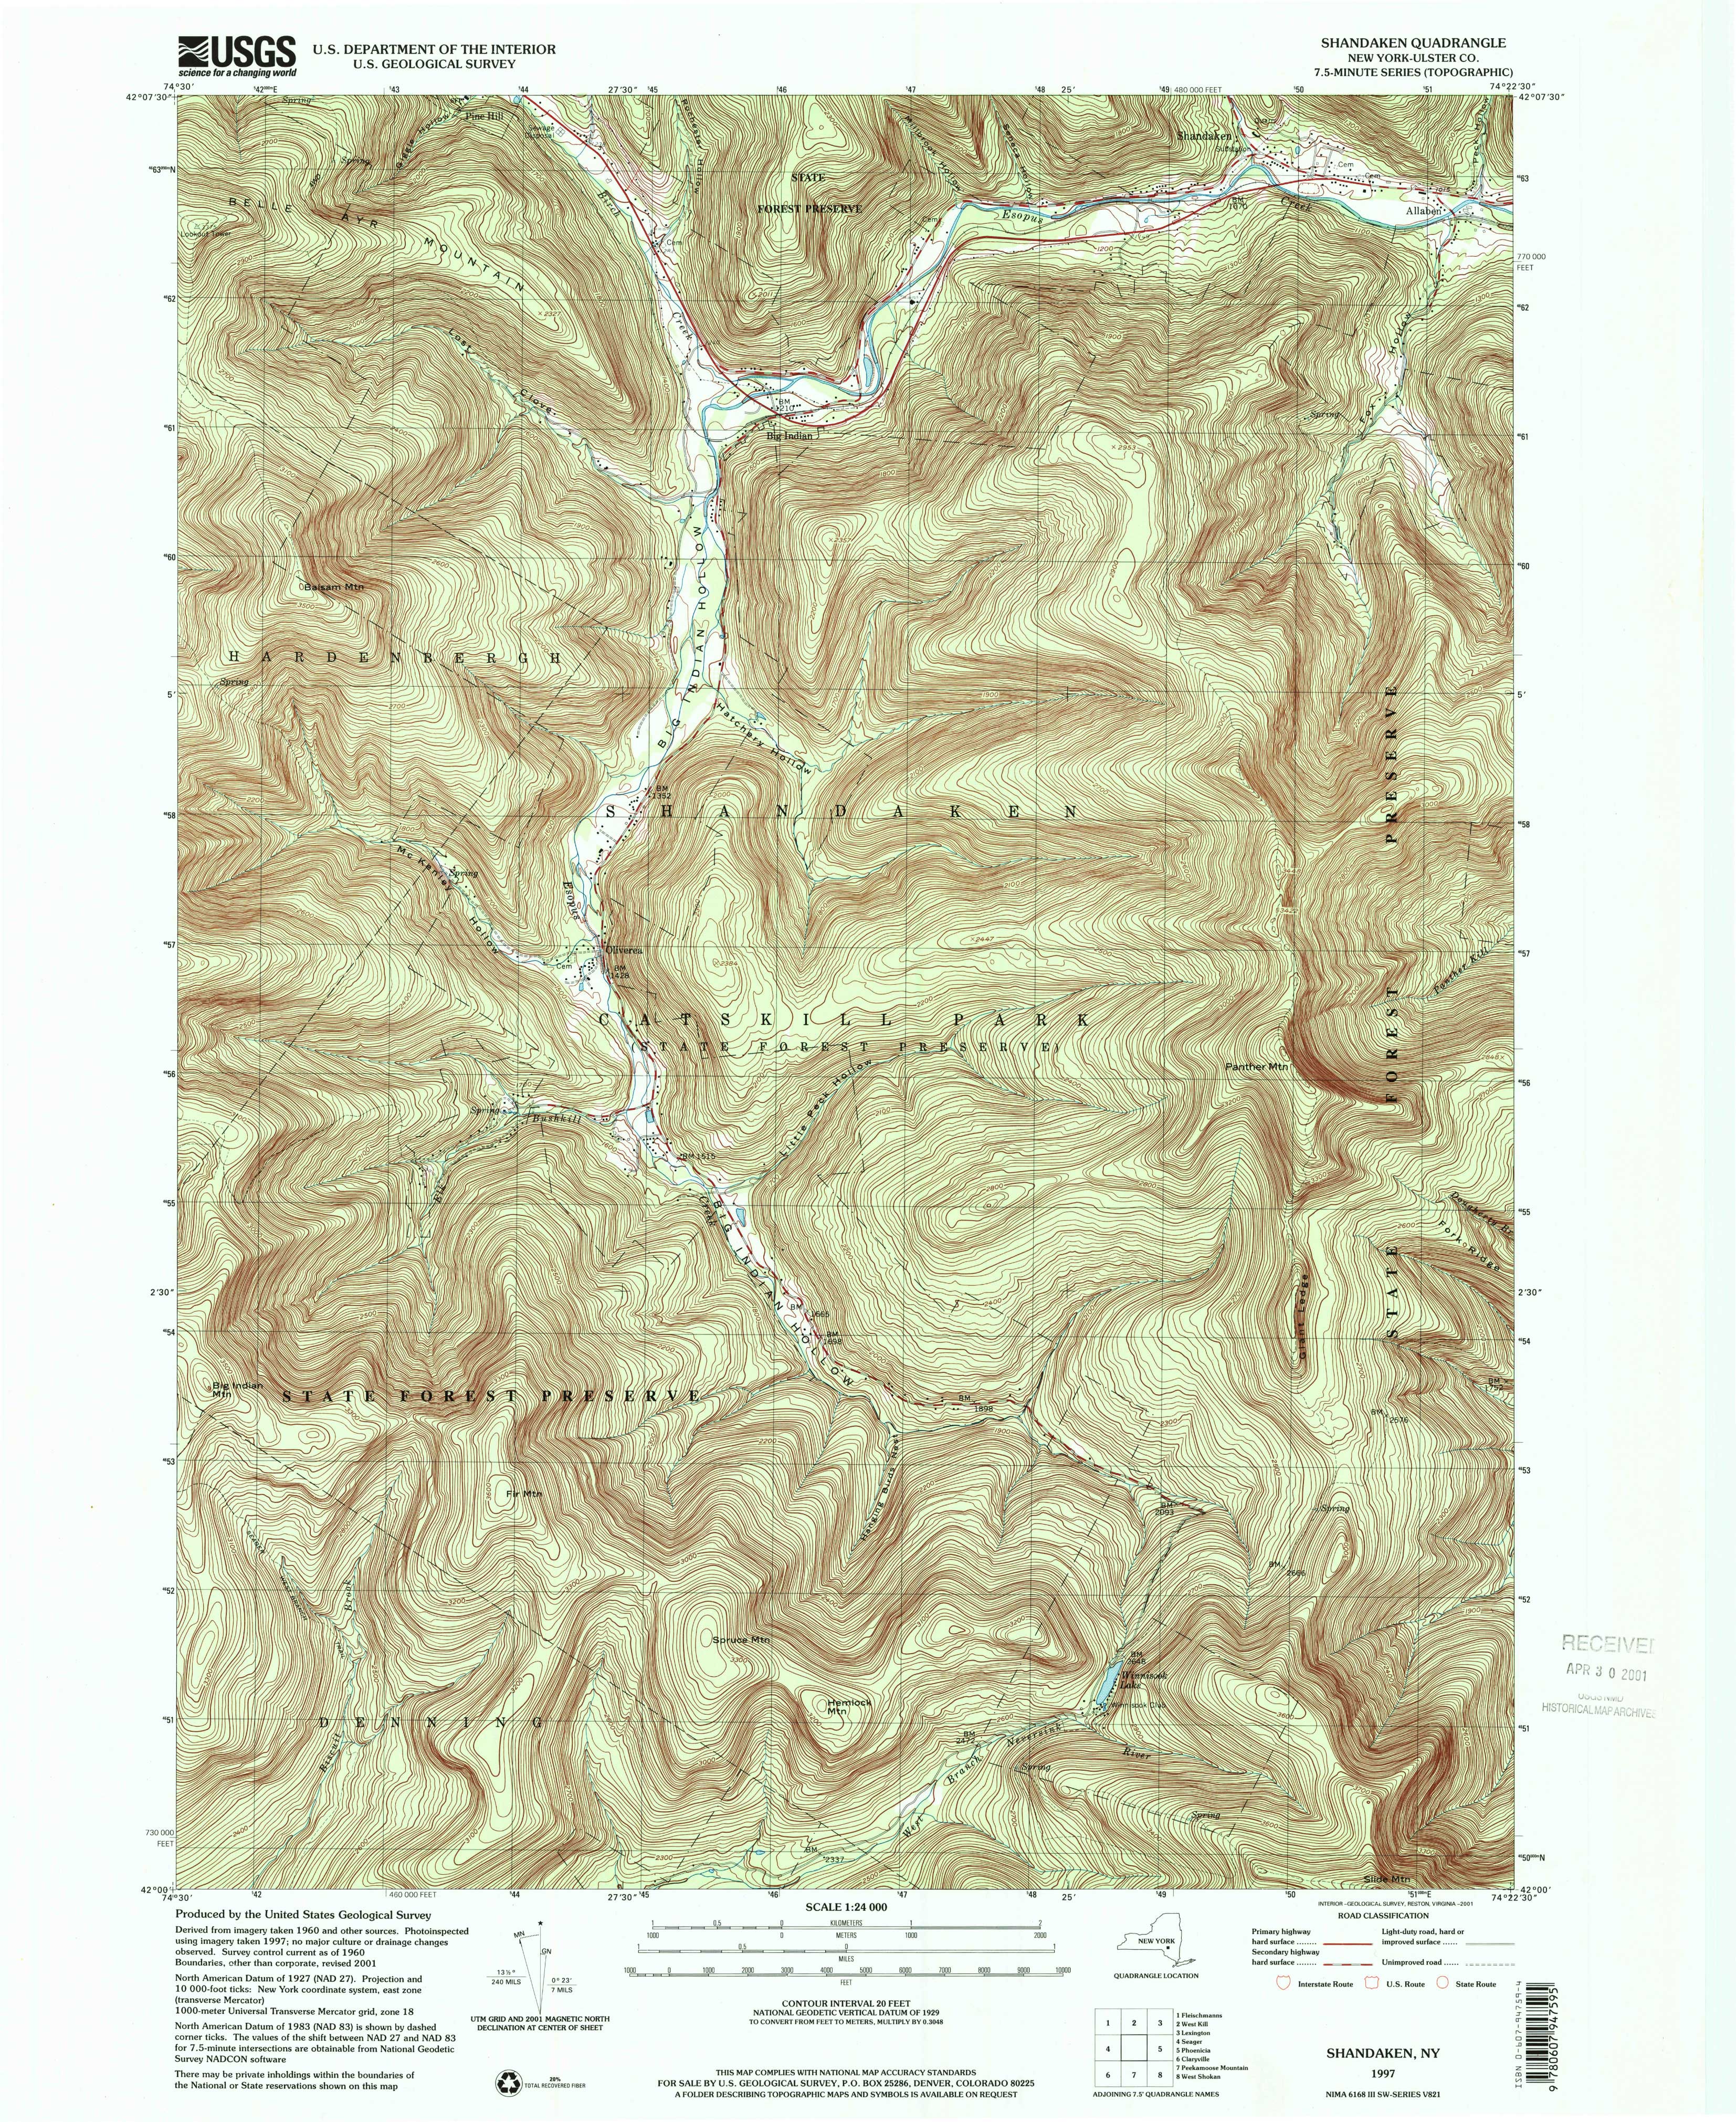 1997 USGS topographical map of Shandaken